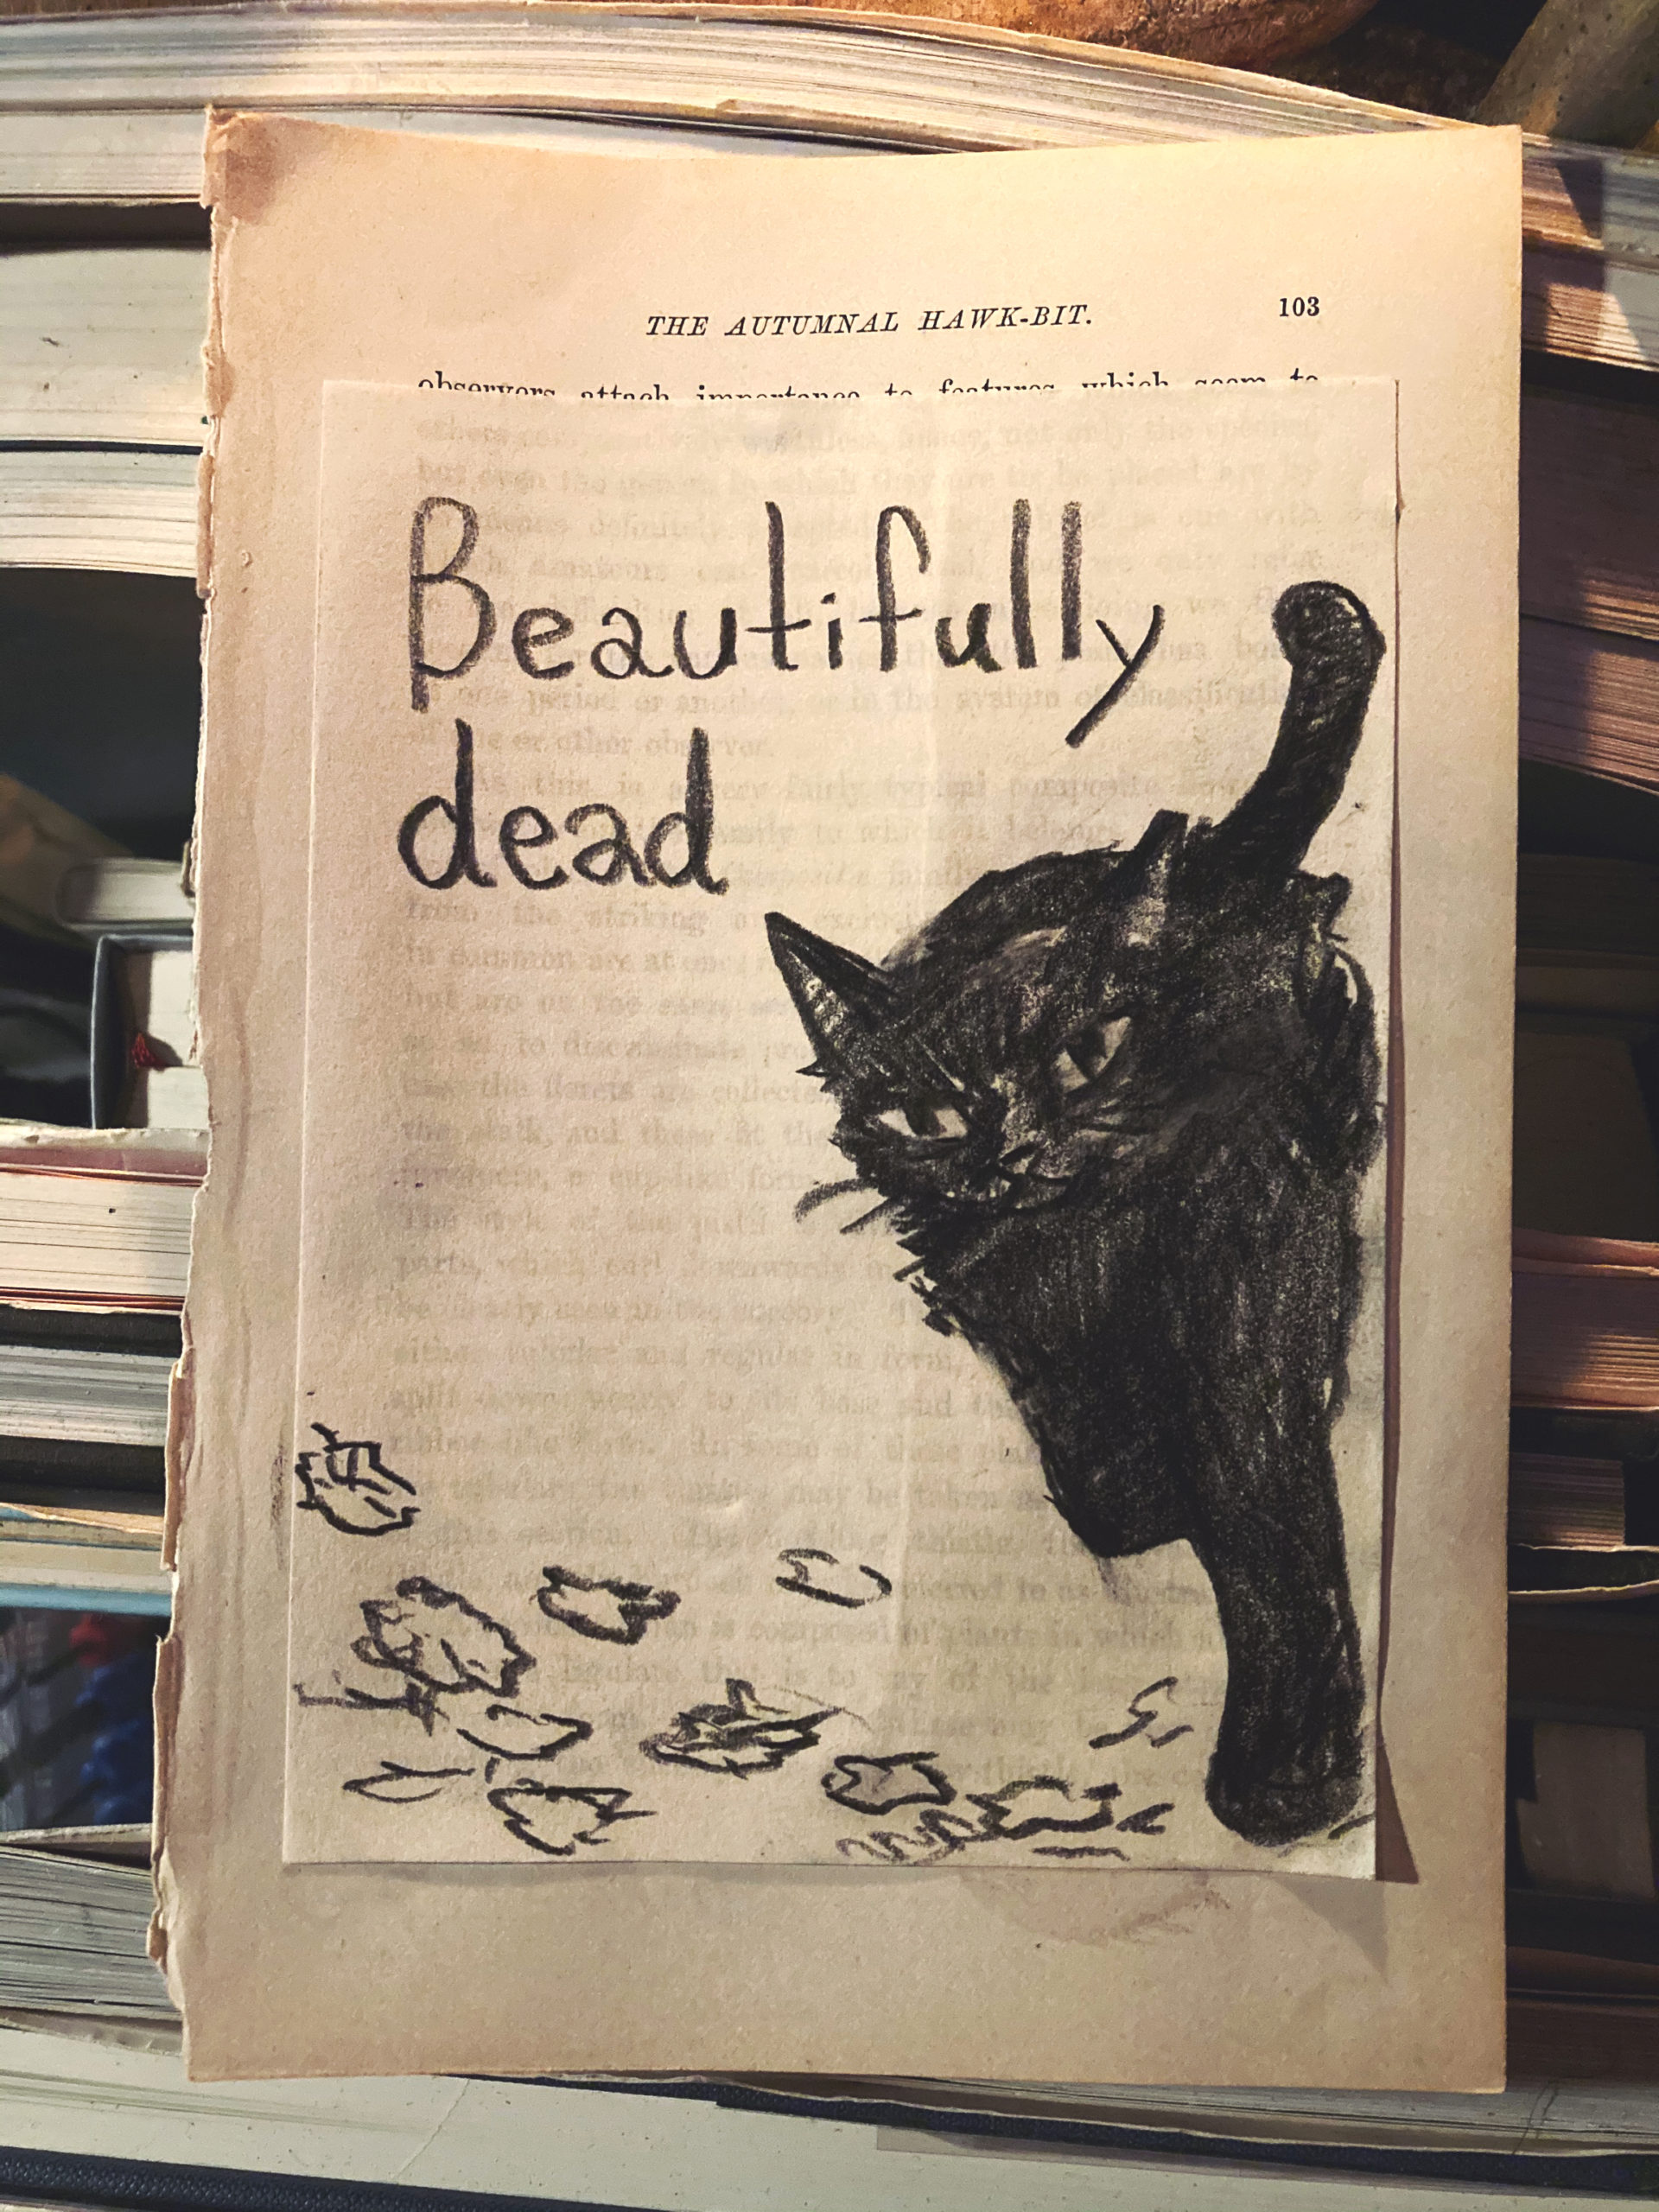 1匹の黒猫が、美しく死んだ。